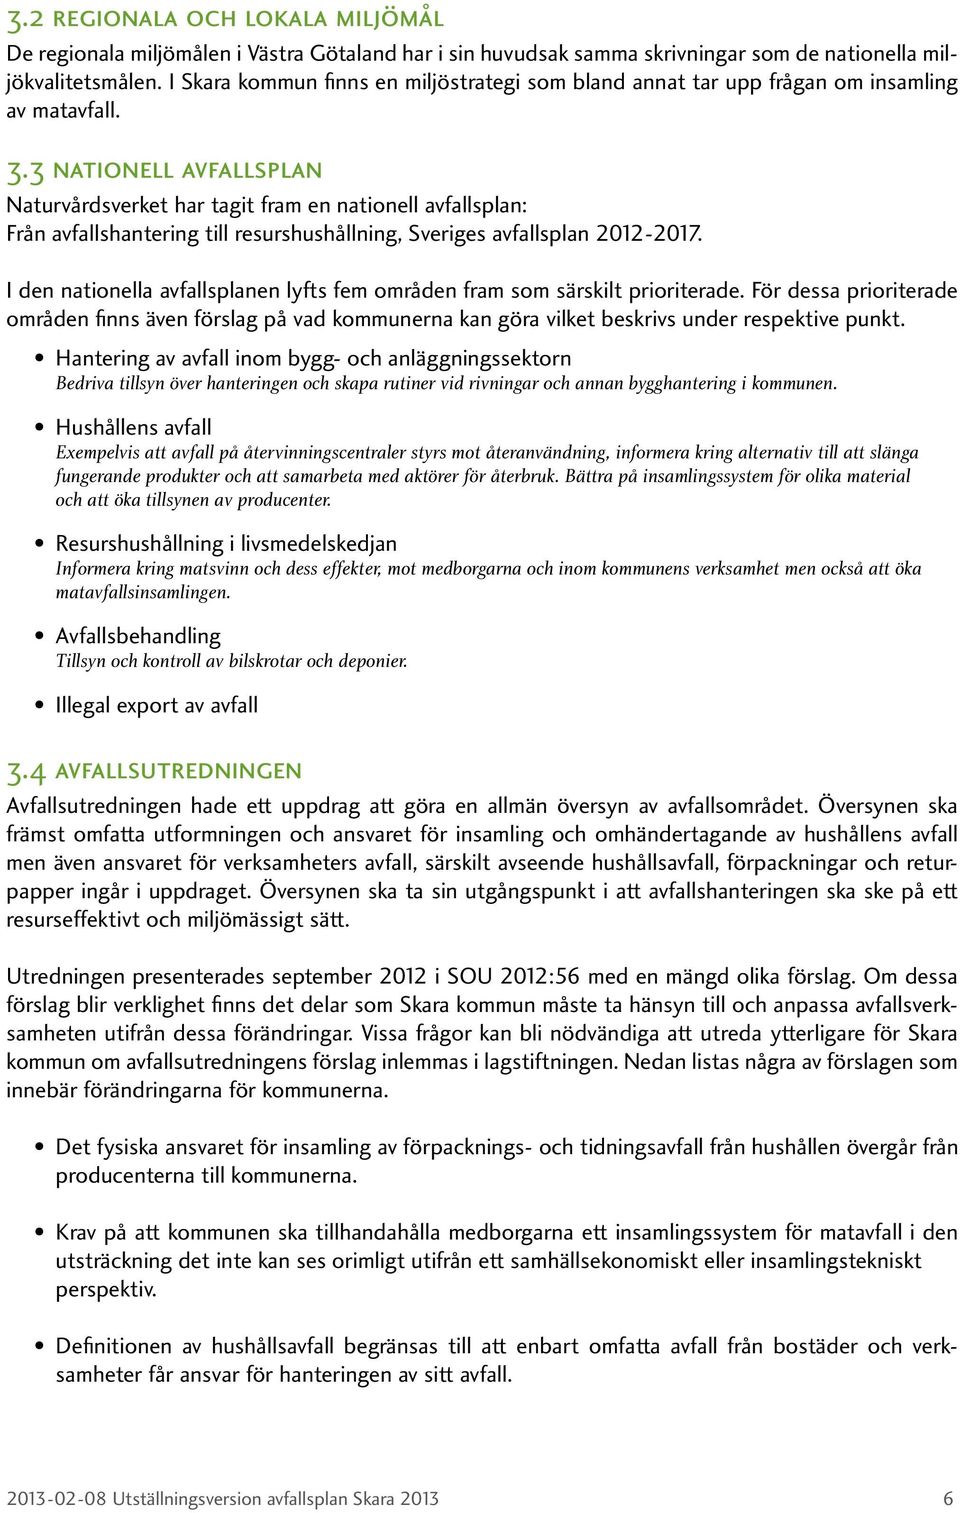 3 nationell avfallsplan Naturvårdsverket har tagit fram en nationell avfallsplan: Från avfallshantering till resurshushållning, Sveriges avfallsplan 2012-2017.